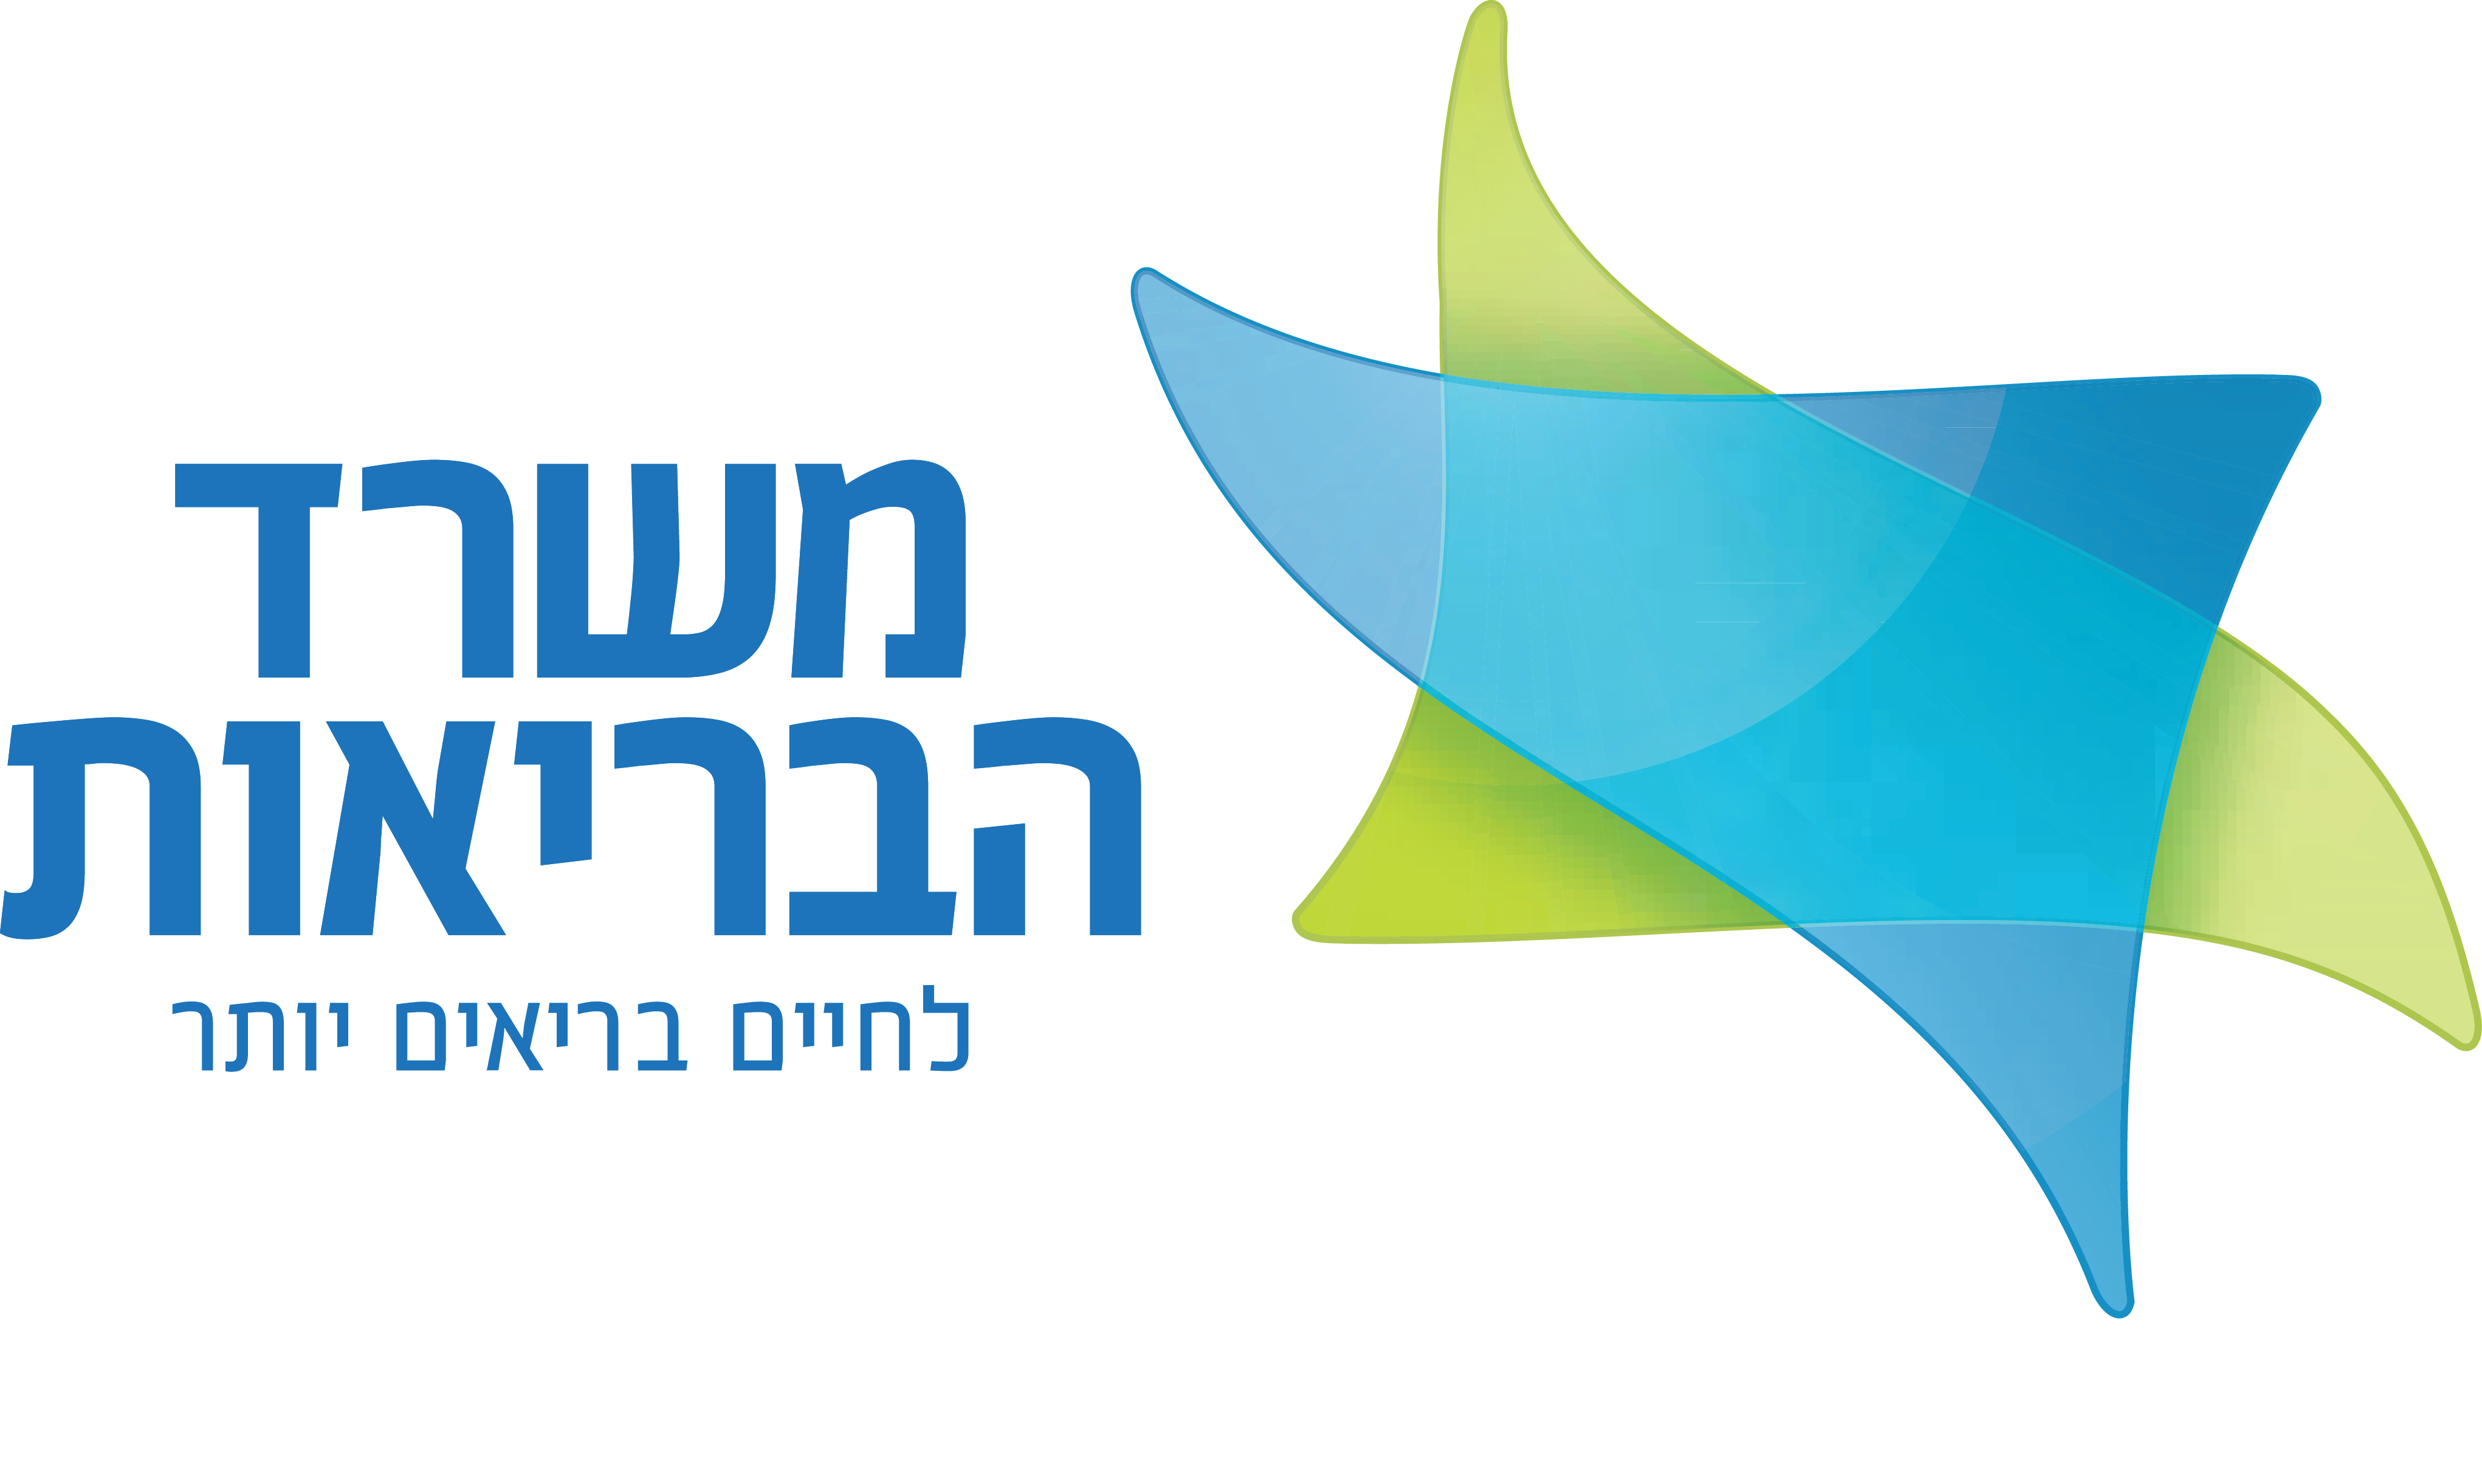 Israeli Ministry of Health